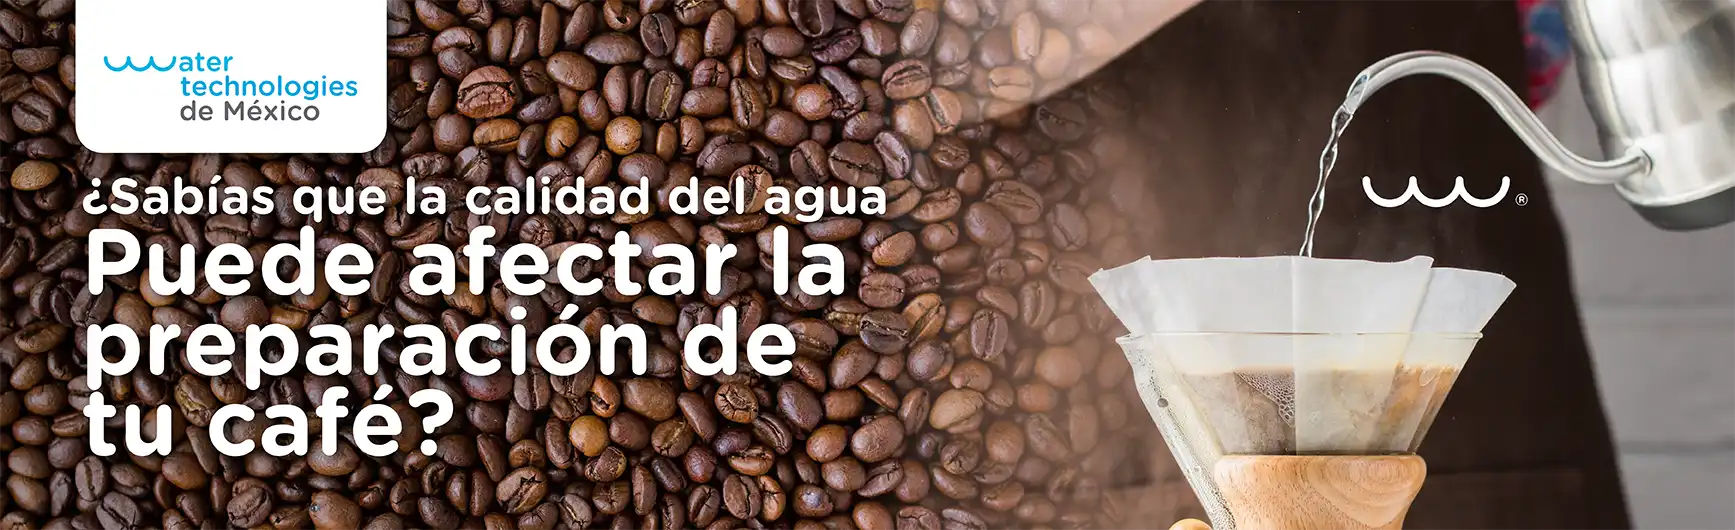 ¿Sabías que la calidad del agua puede afectar la preparación de tu café?